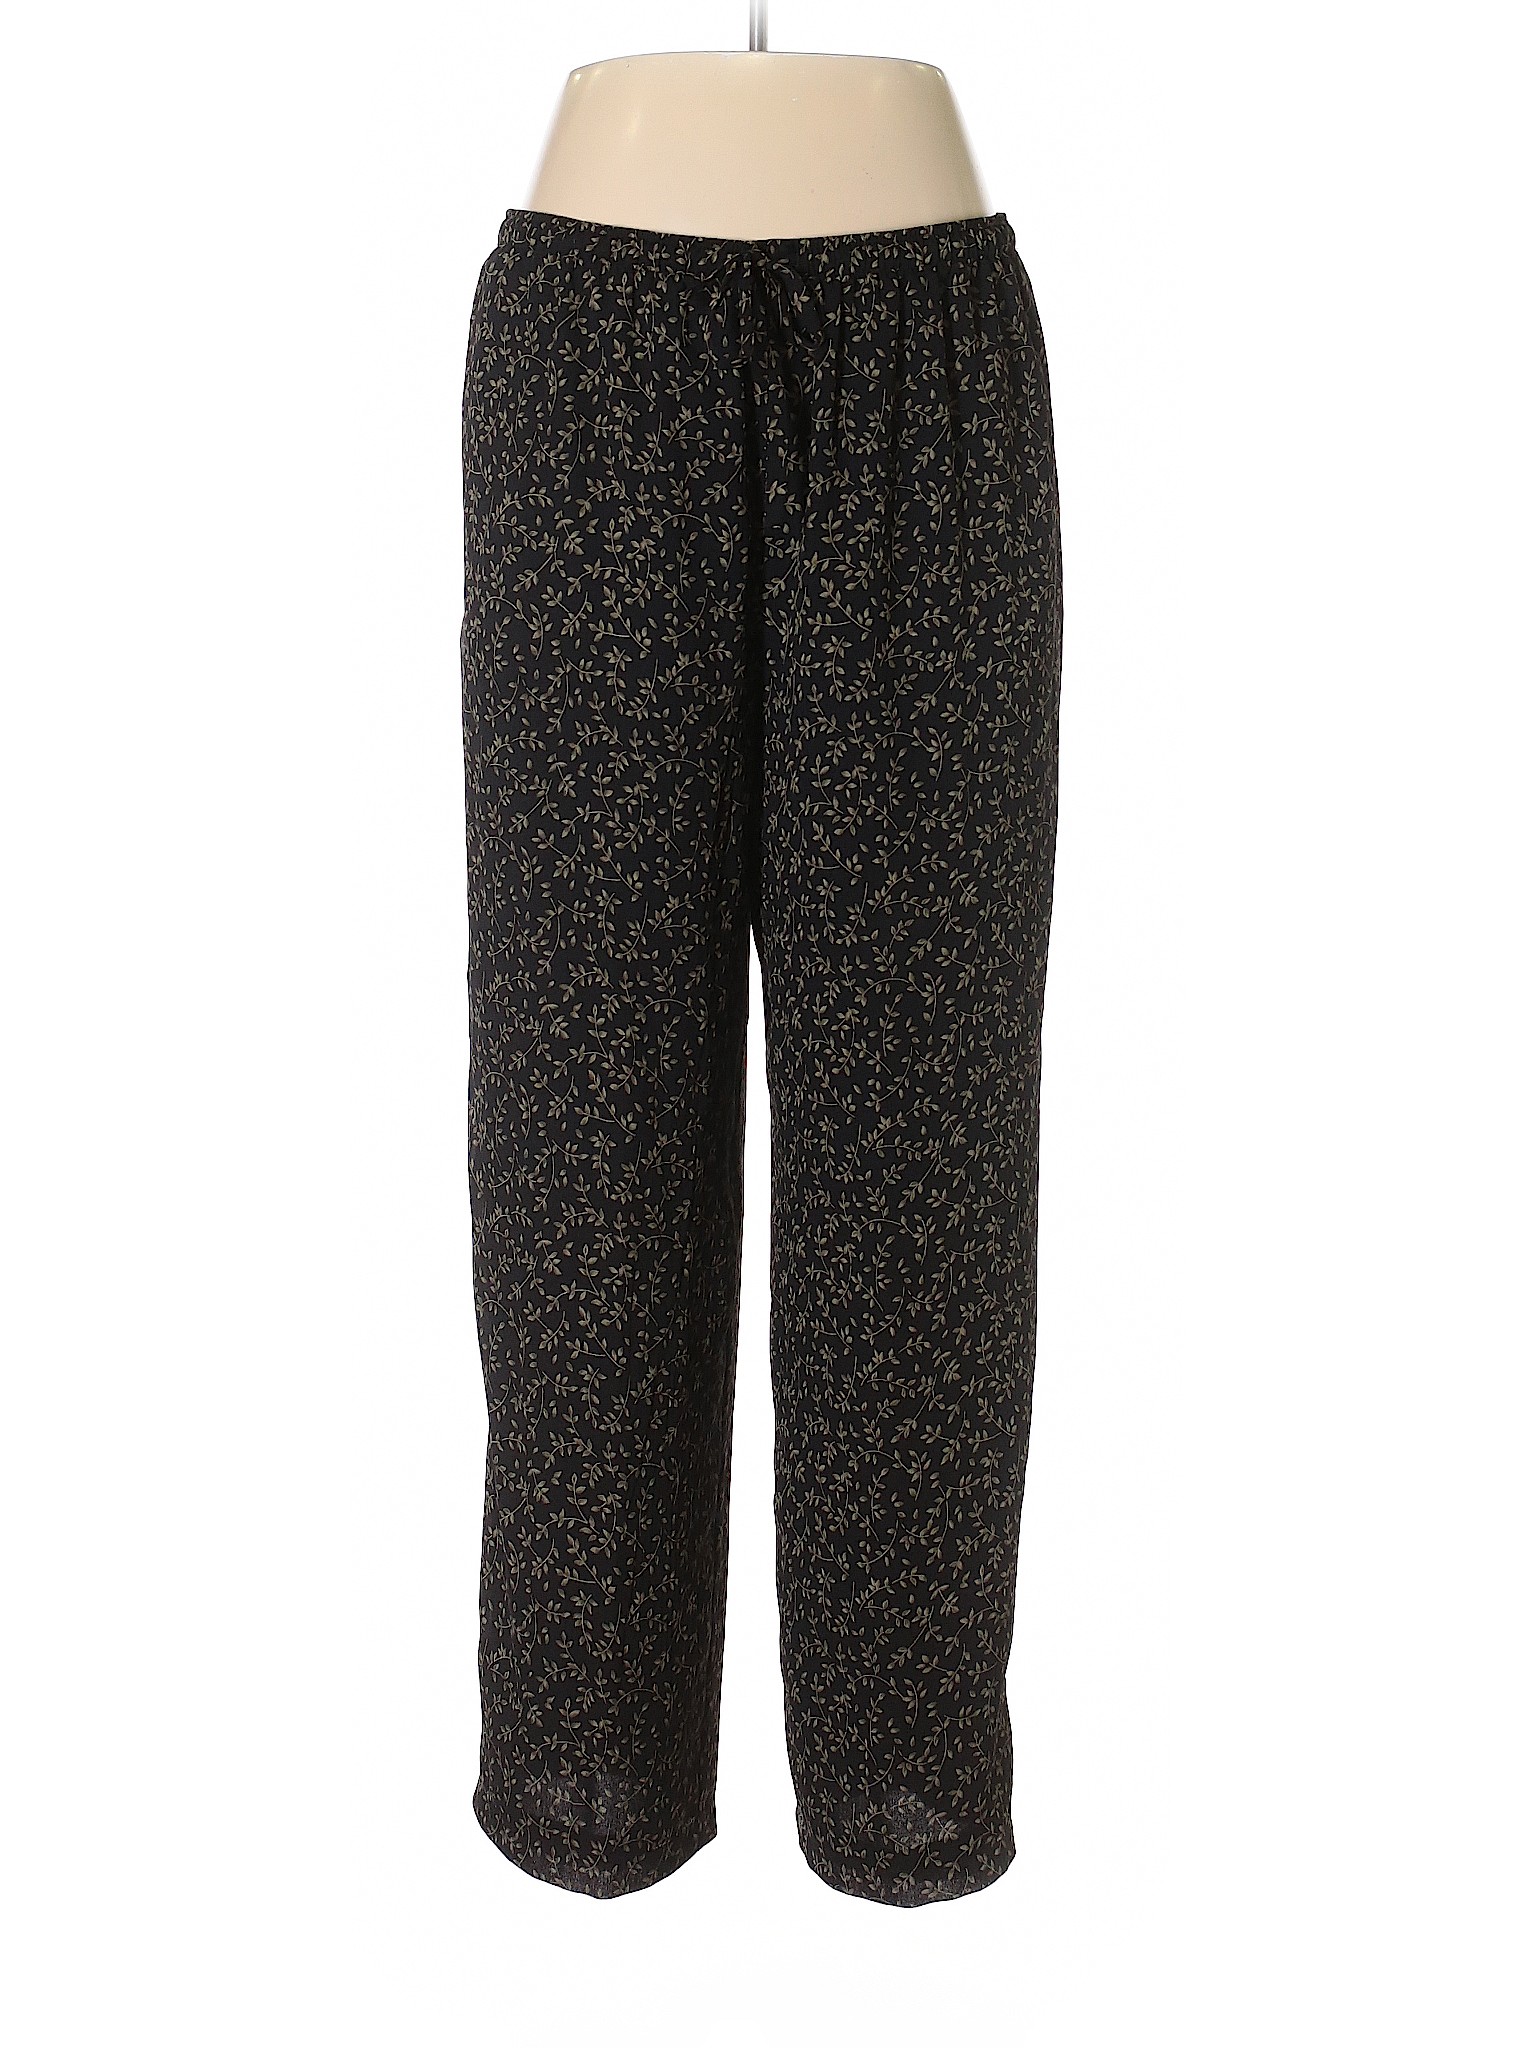 Chaus Women Black Casual Pants 12 | eBay